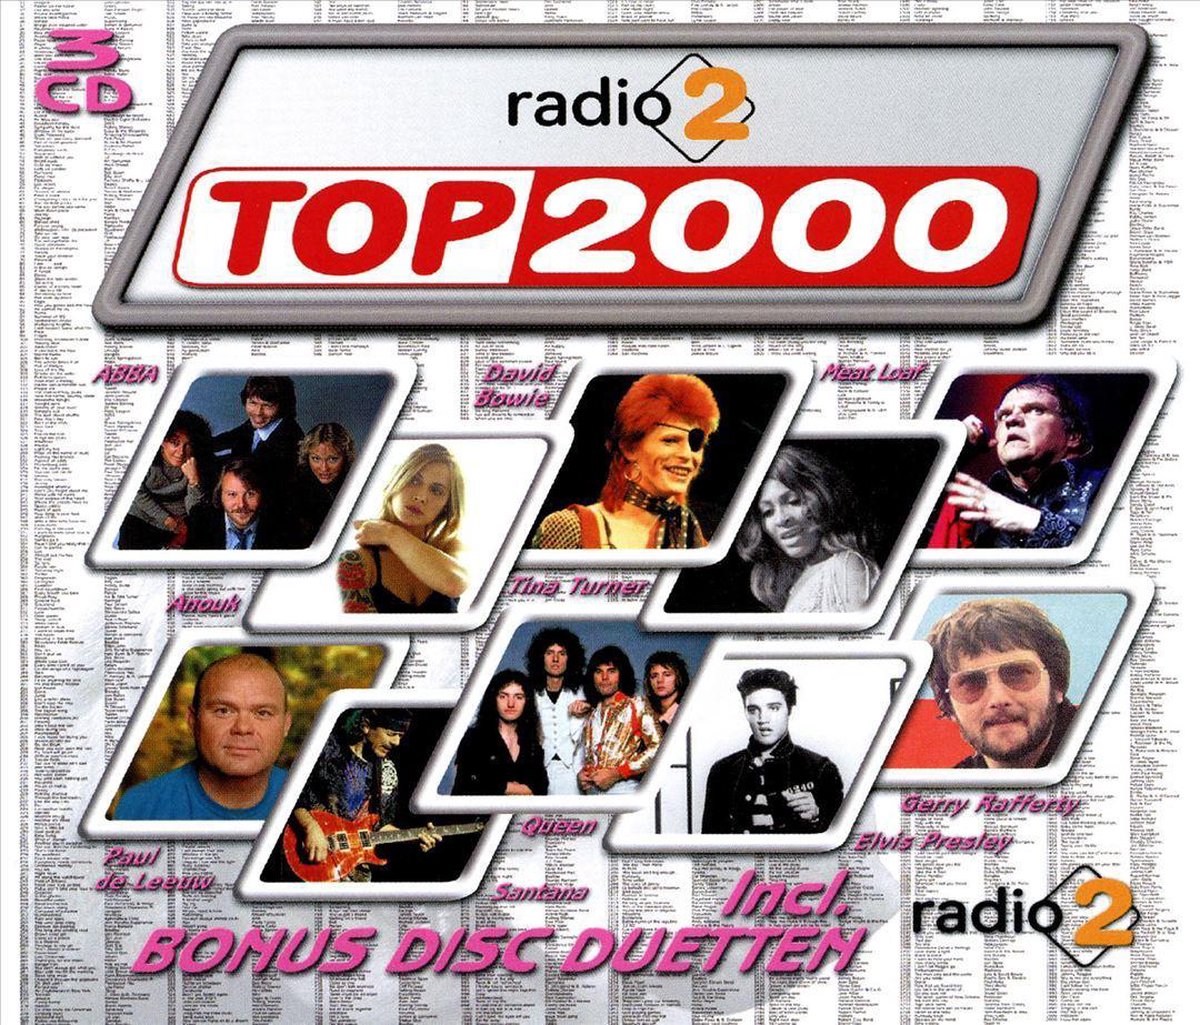 Radio 2 Top 2000 Editie 2007, various artists | CD (album) | Muziek |  bol.com